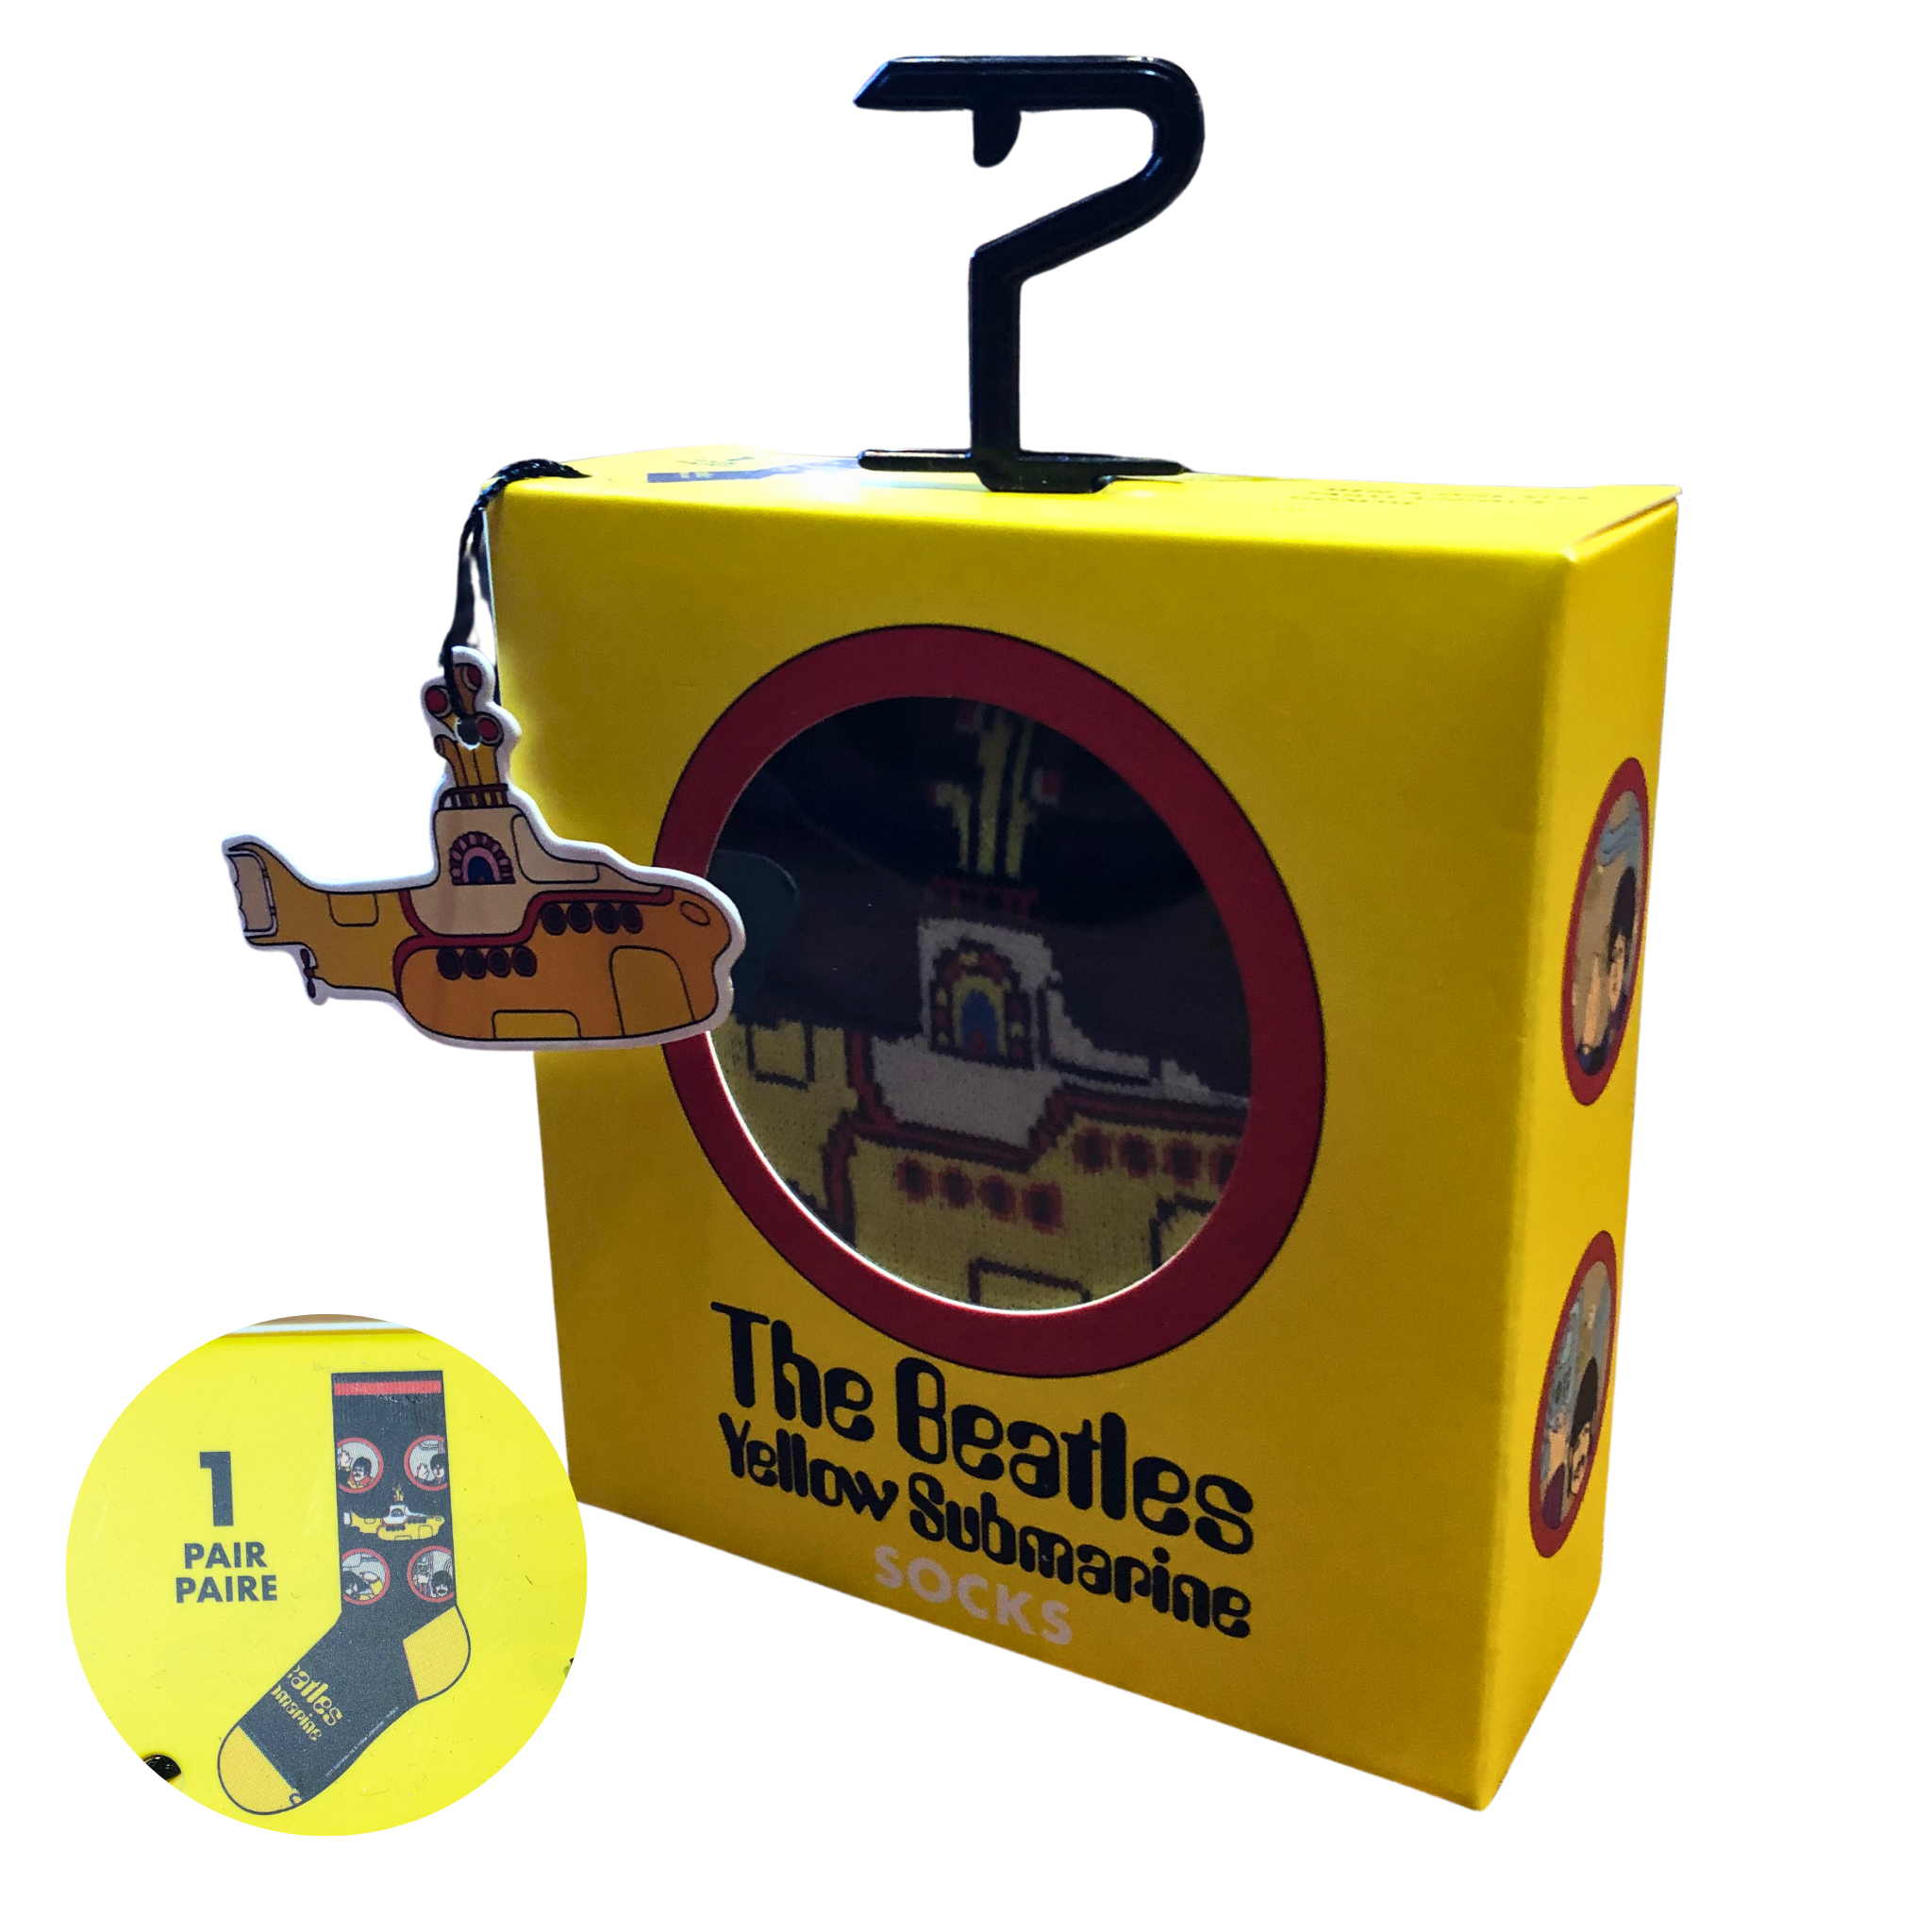 The Beatles: Yellow Submarine - Gift Box